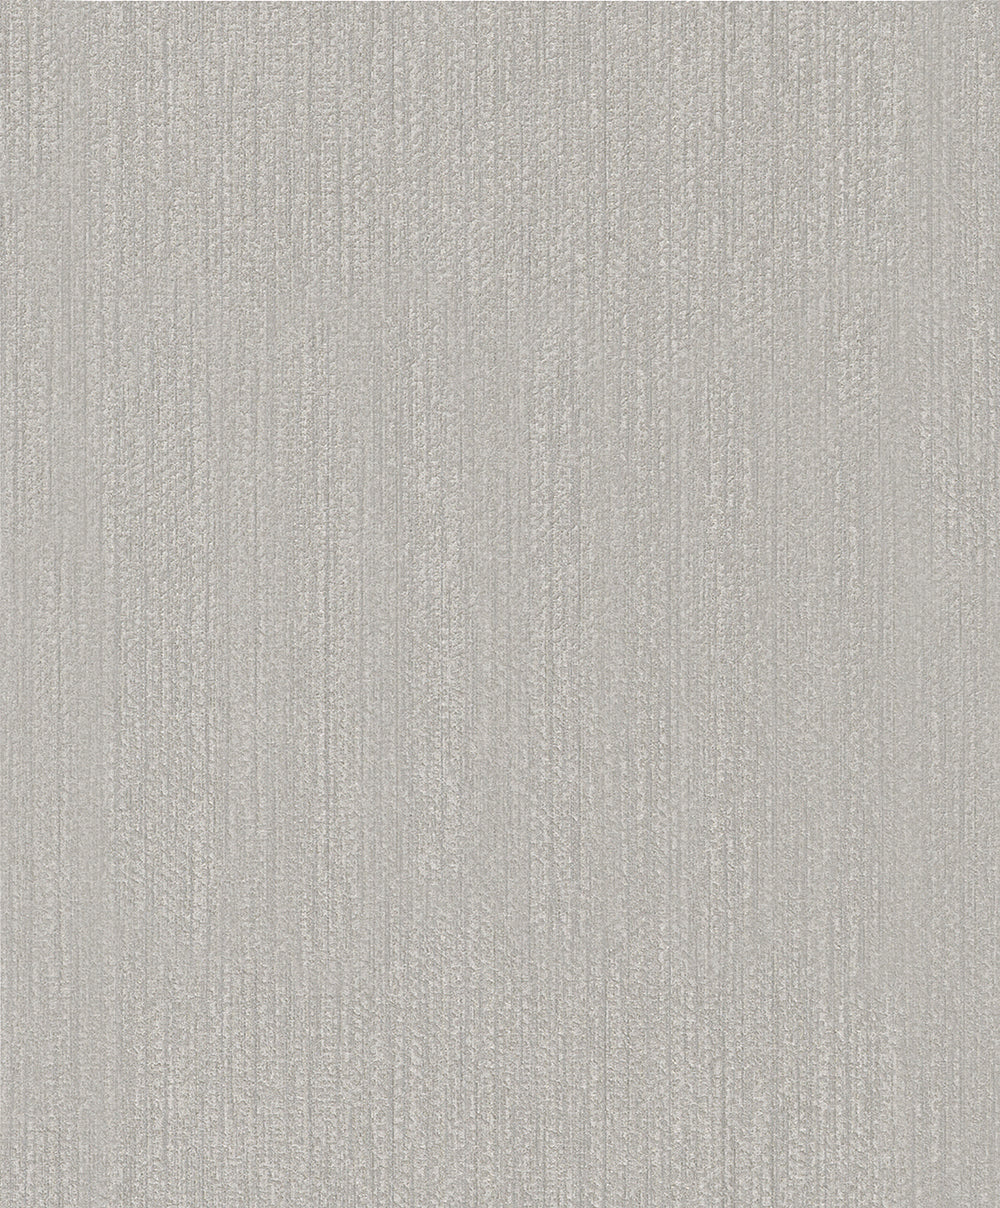 Schoner Wohnen New Spirit - Ambient bamboo weave plain wallpaper Marburg Roll Grey.  32738